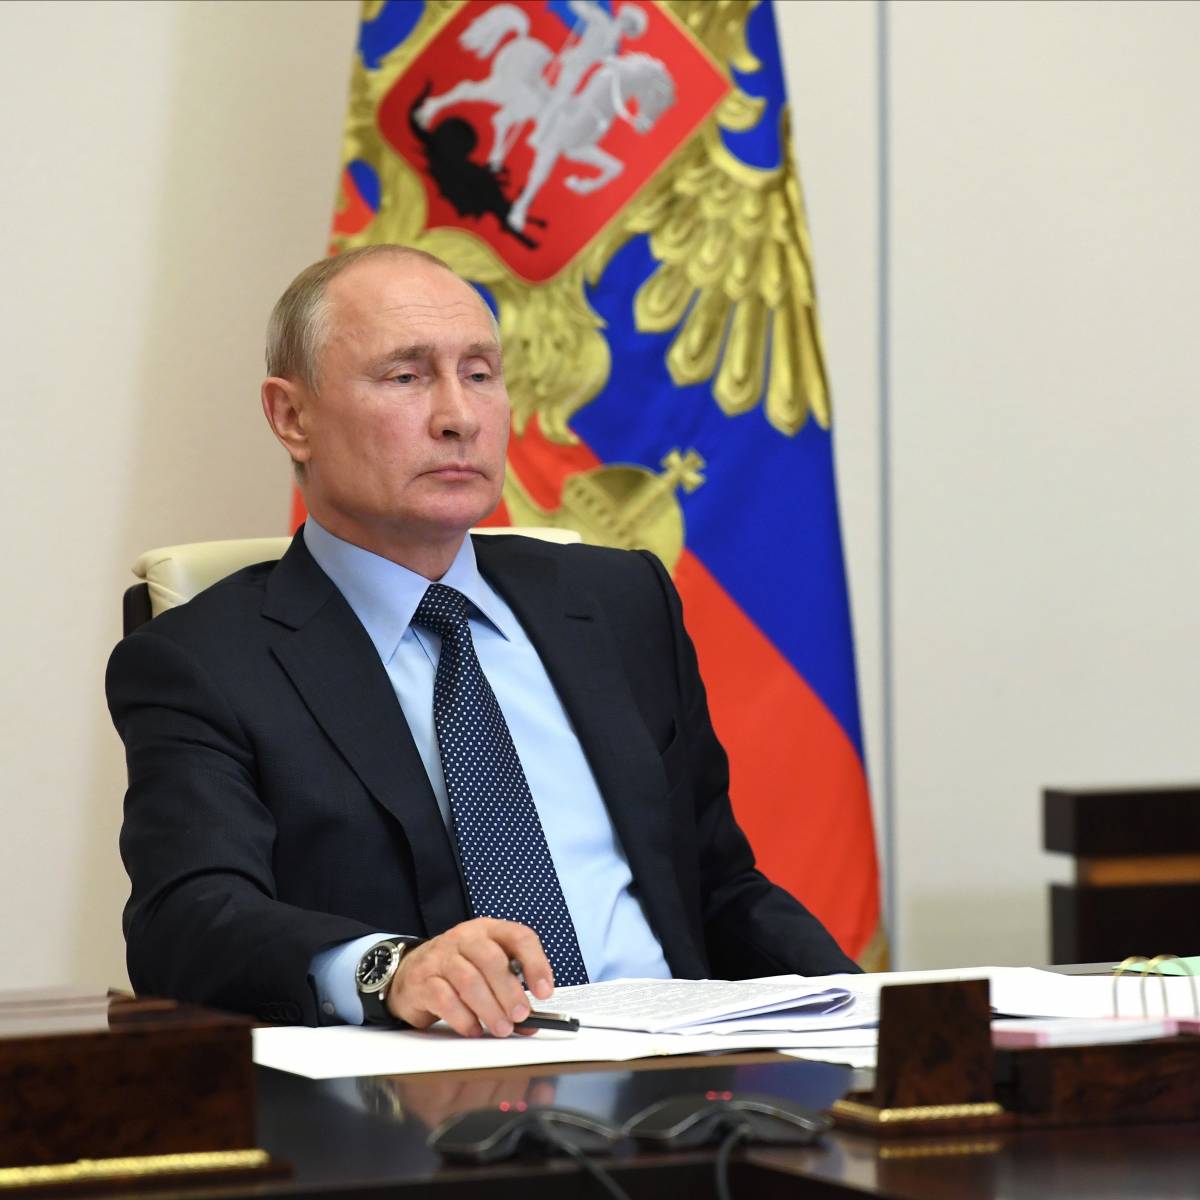 Путин остановил беседу с губернатором из-за телефонного разговора